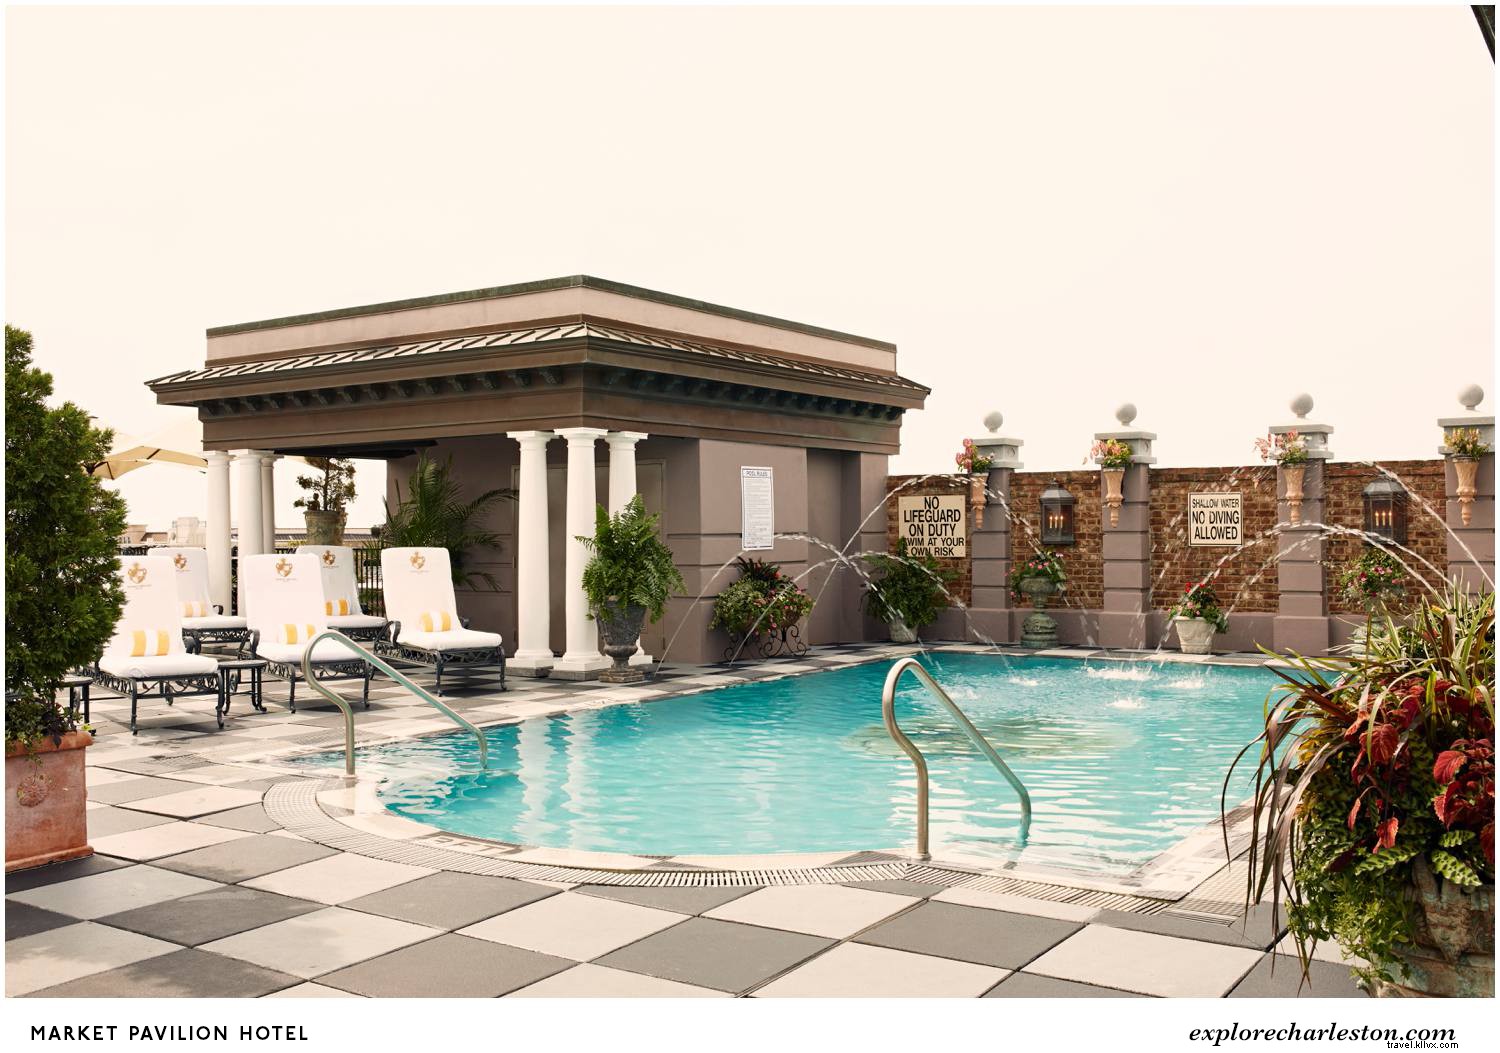 As 12 melhores piscinas legais de Charleston 